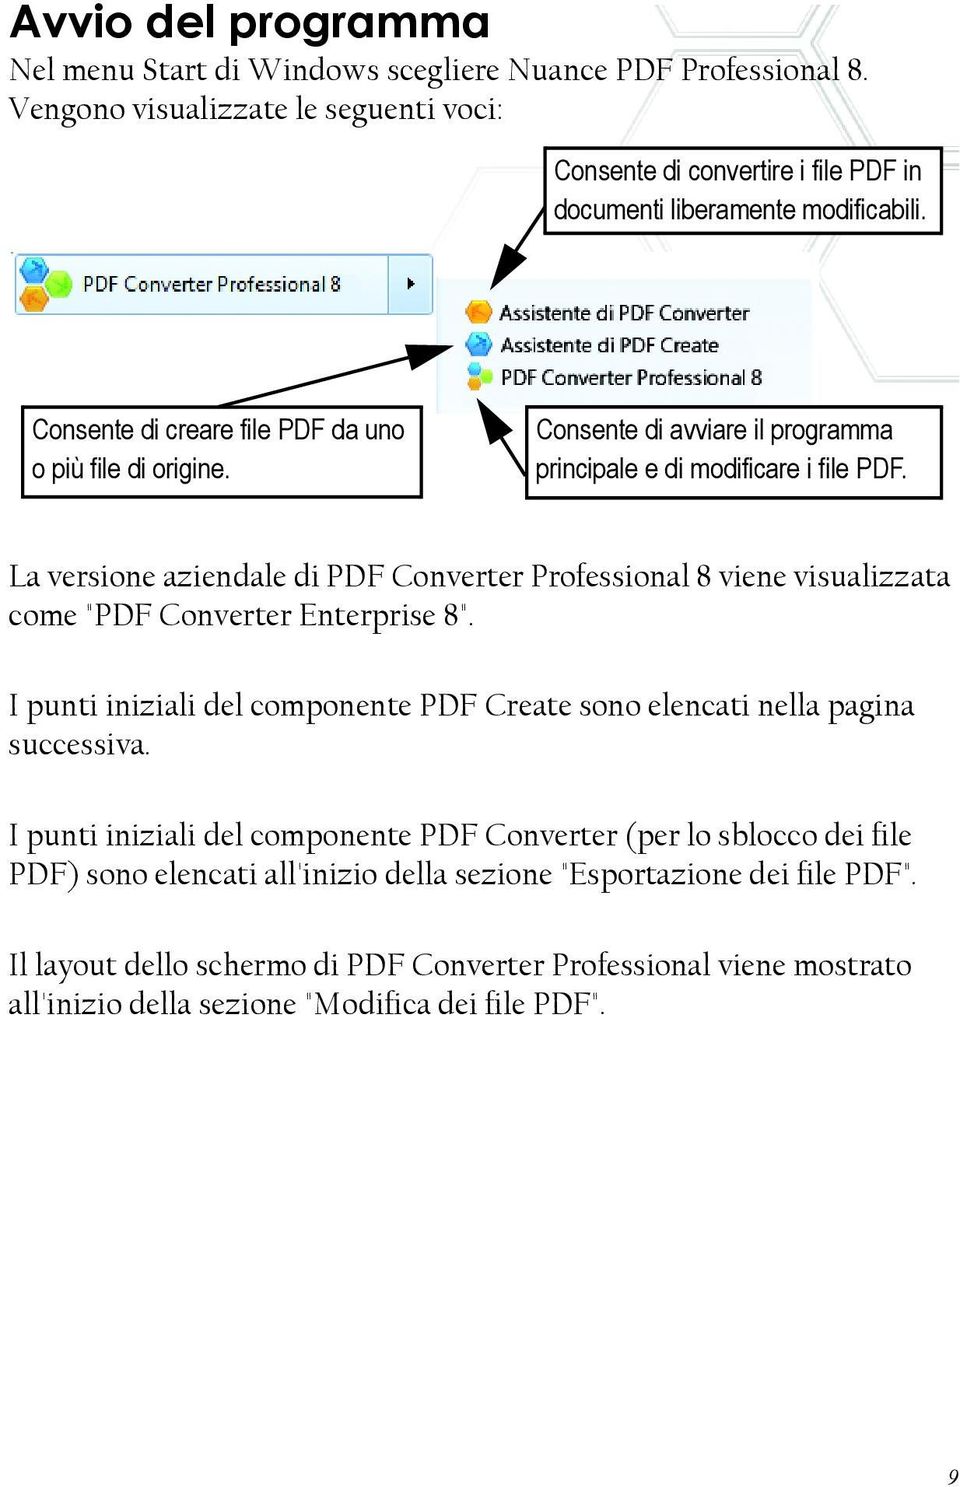 La versione aziendale di PDF Converter Professional 8 viene visualizzata come "PDF Converter Enterprise 8". I punti iniziali del componente PDF Create sono elencati nella pagina successiva.